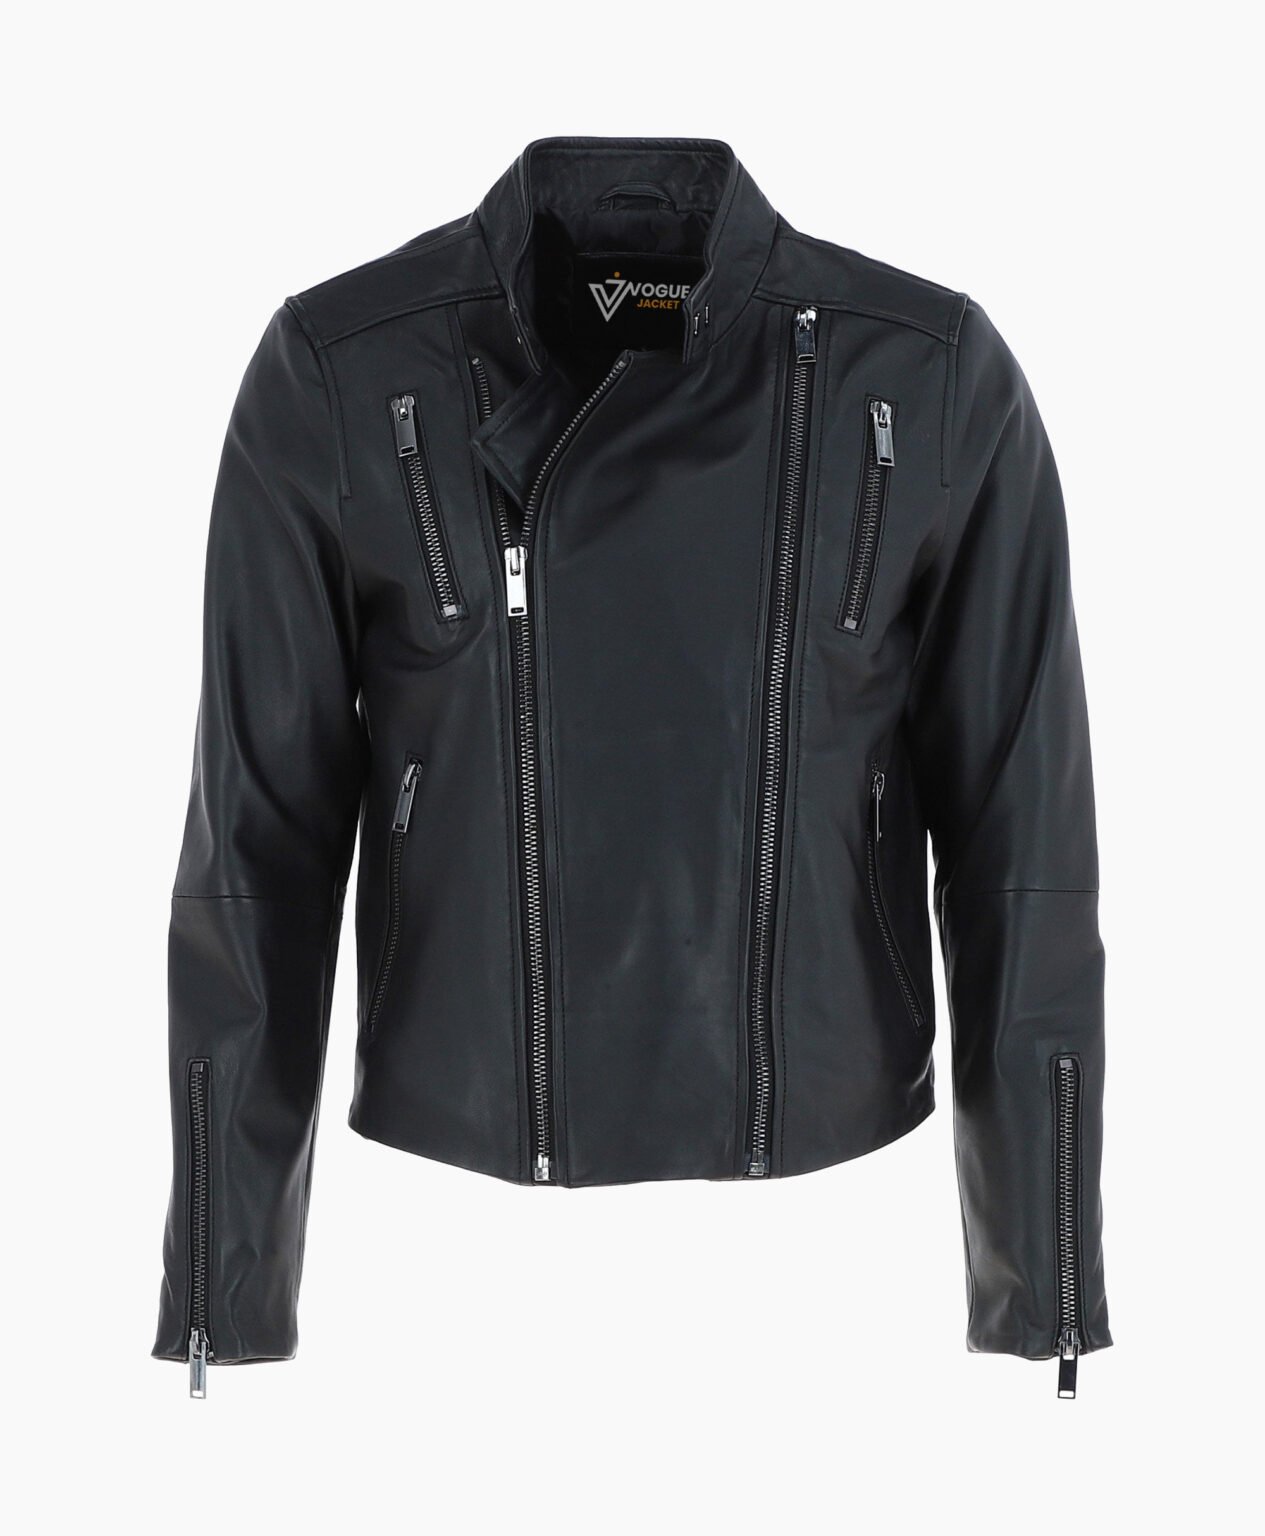 vogue-jacket-leather-biker-jacket-black-logan-image200